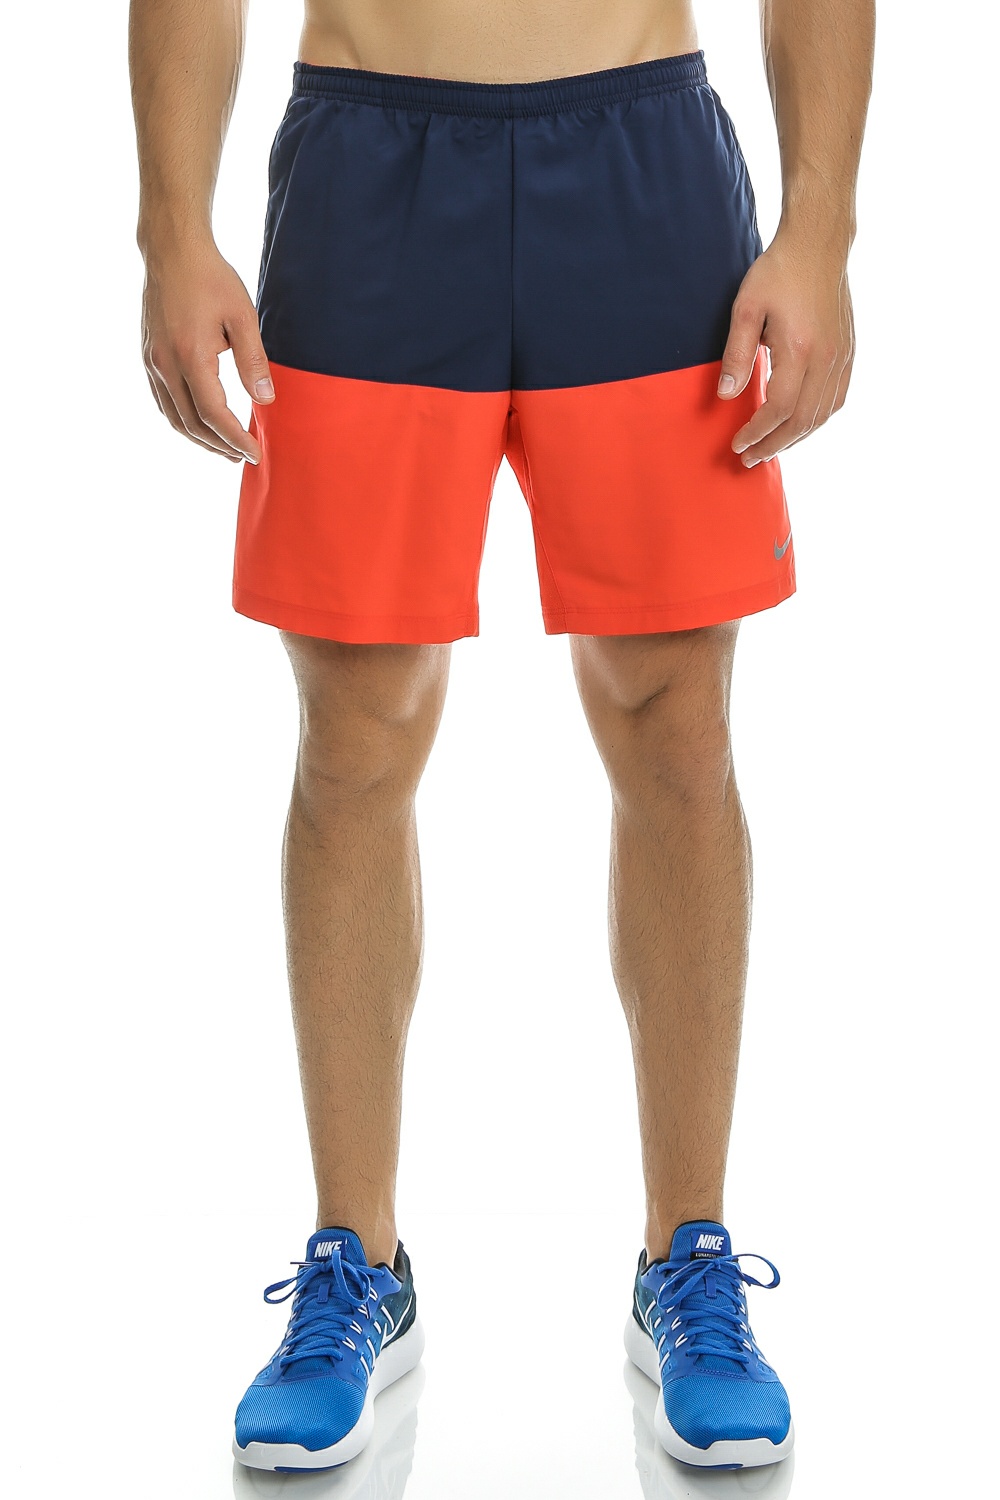 Ανδρικά/Ρούχα/Σορτς-Βερμούδες/Αθλητικά NIKE - Ανδρικό αθλητικό σορτς Nike 7" DISTANCE SHORT (SP15) πορτοκαλί - μπλε